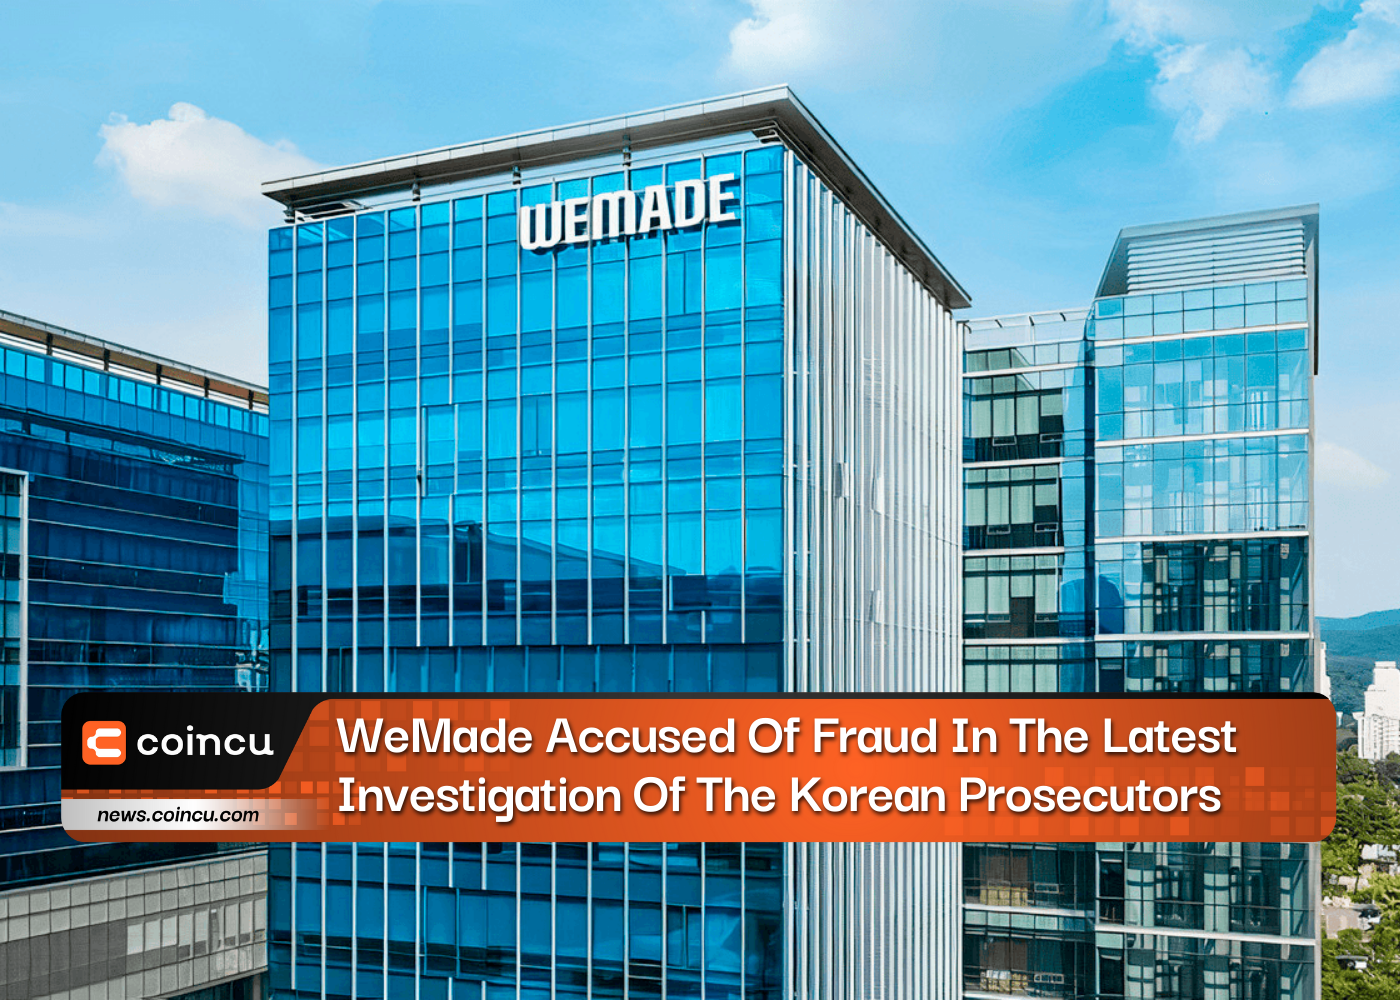 속보: 최근 한국 검찰 수사에서 위메이드 사기 혐의로 기소